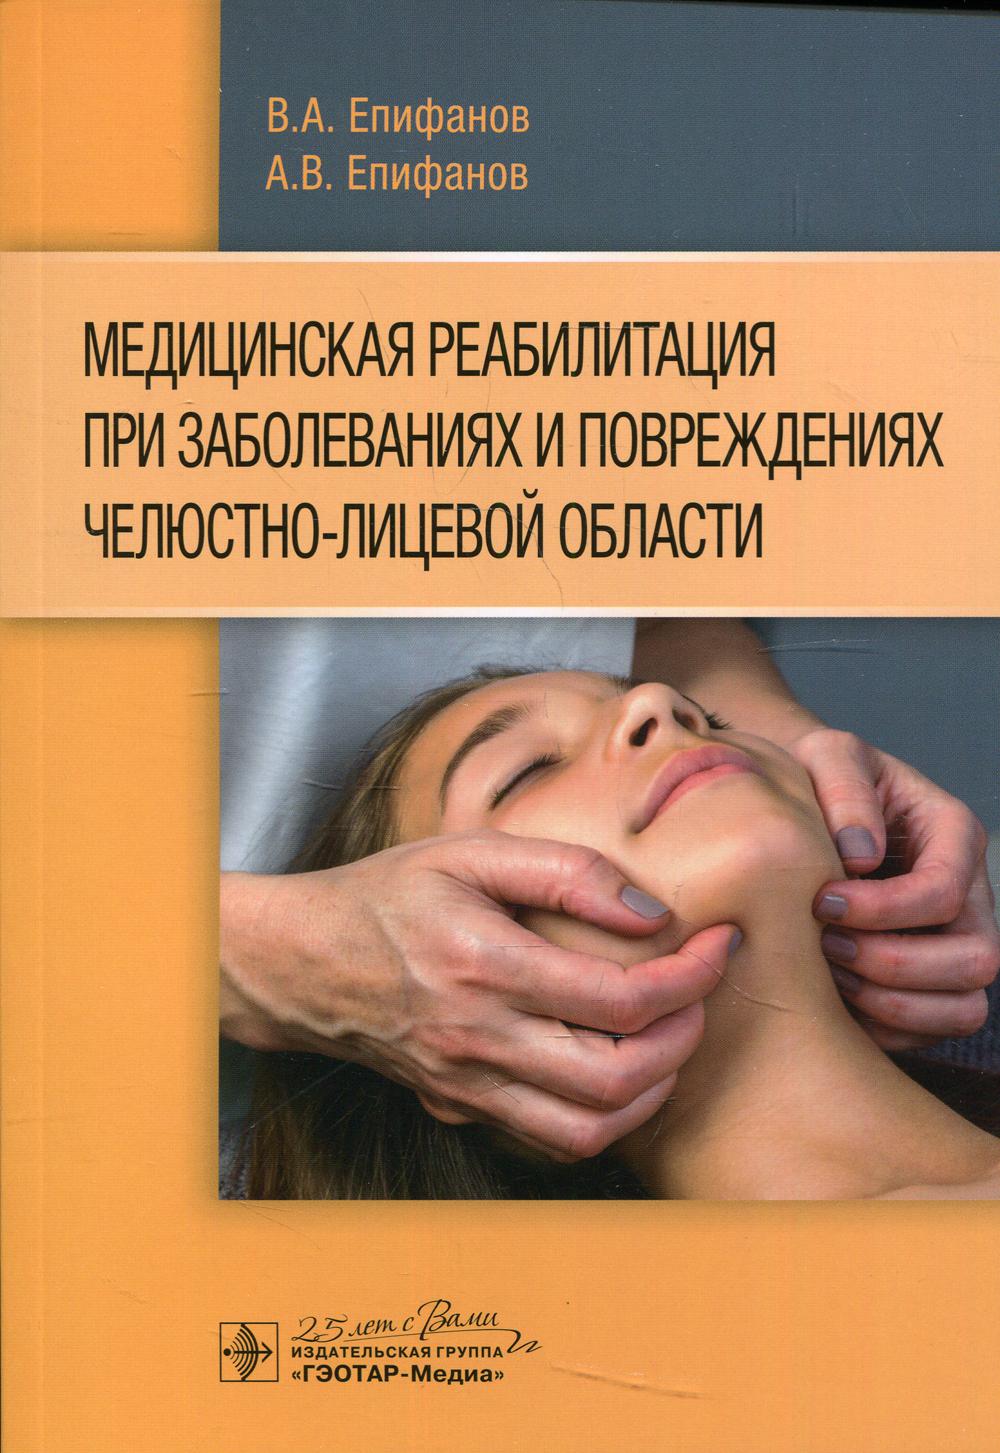 фото Книга медицинская реабилитация при заболеваниях и повреждениях челюстно-лицевой области гэотар-медиа